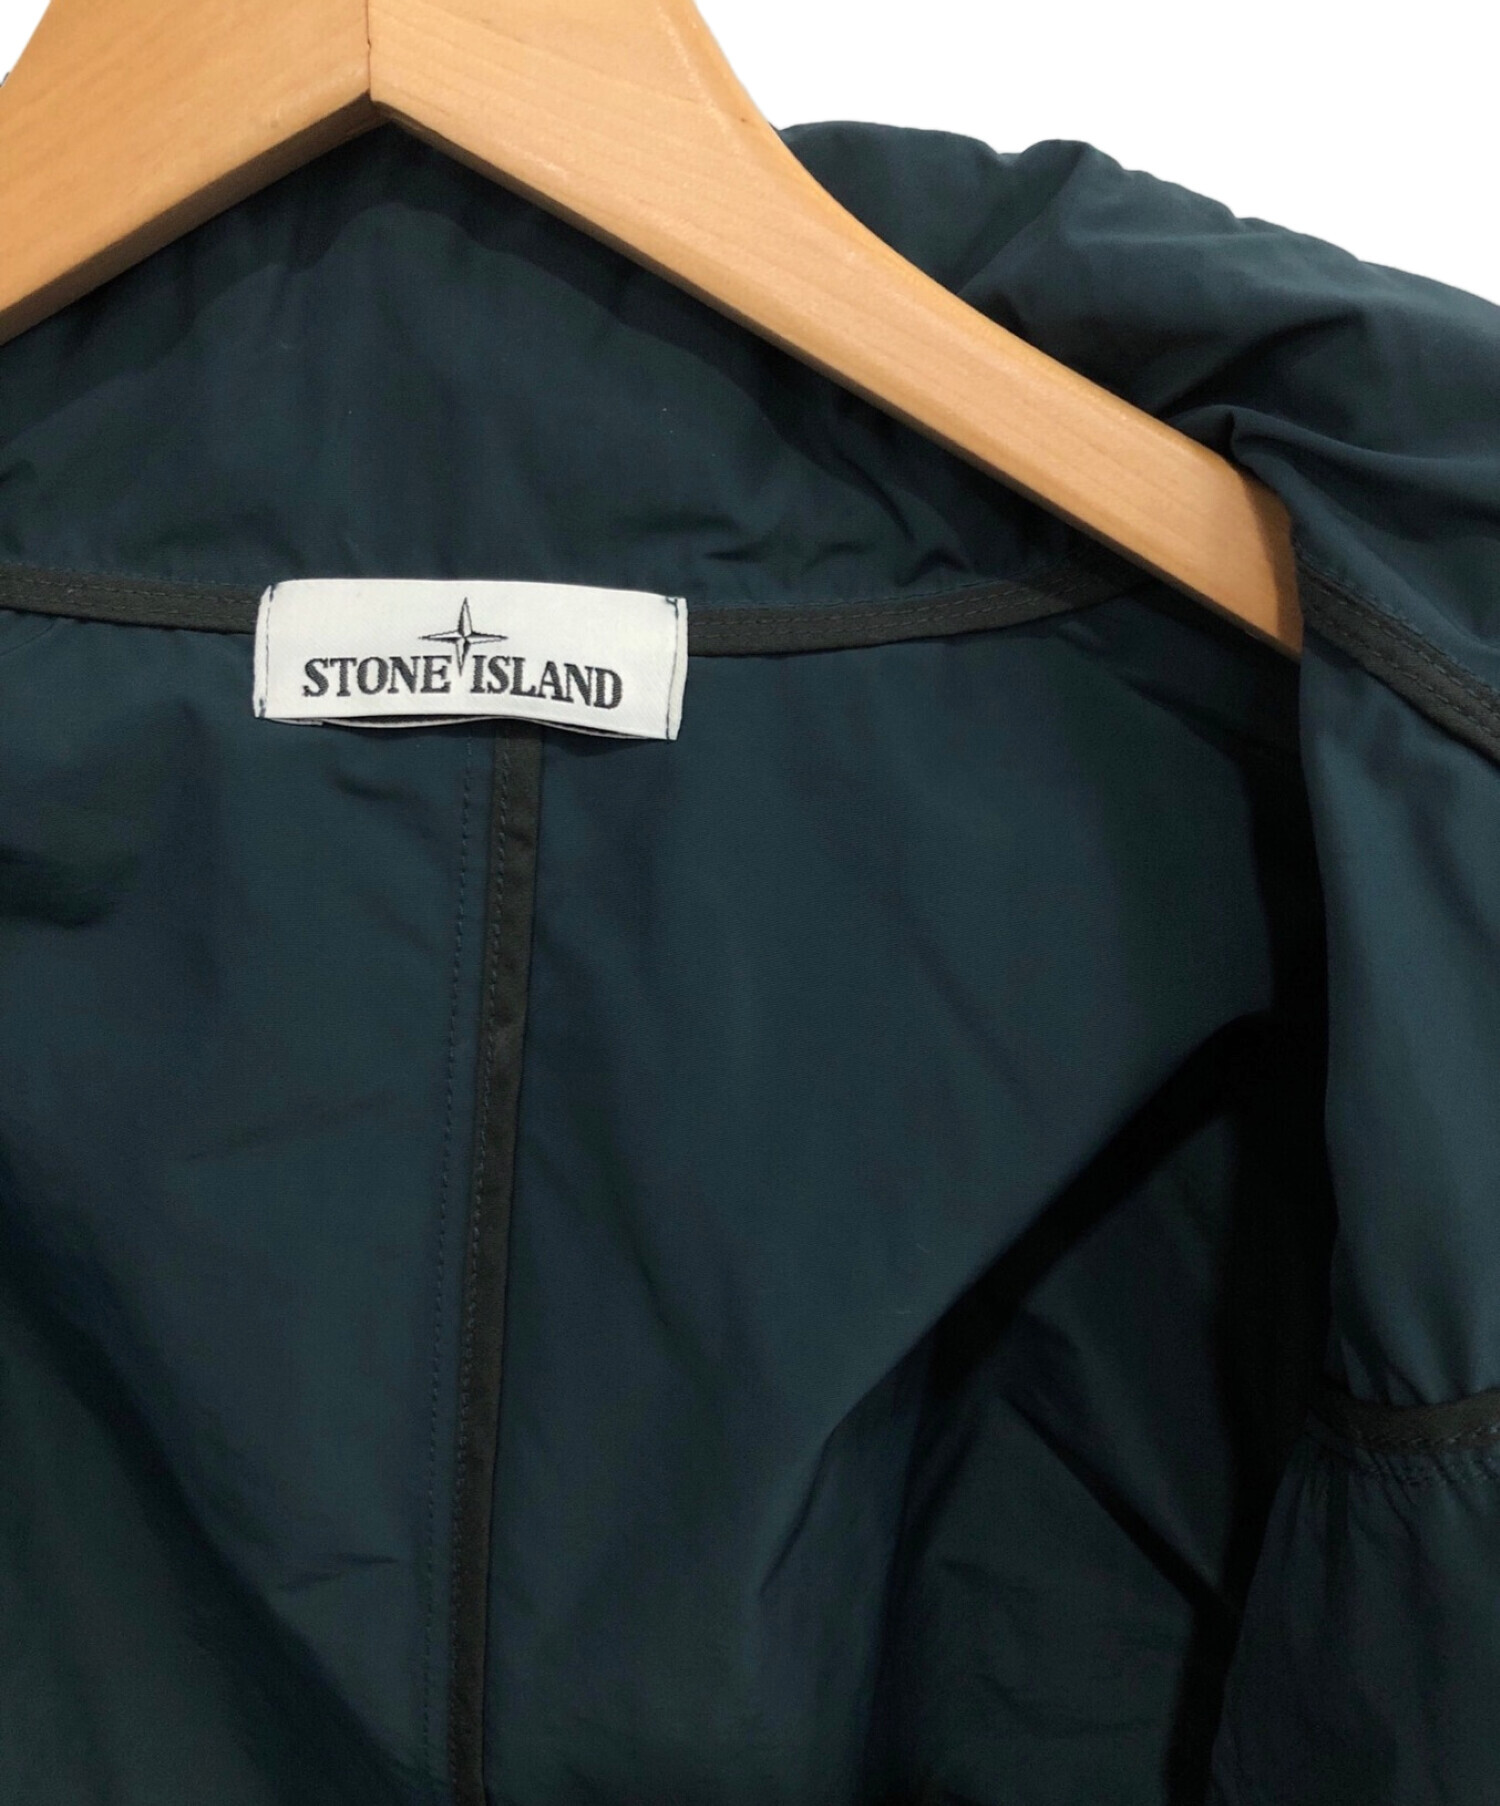 STONE ISLAND (ストーンアイランド) ロゴボンバージャケット グリーン サイズ:L 未使用品